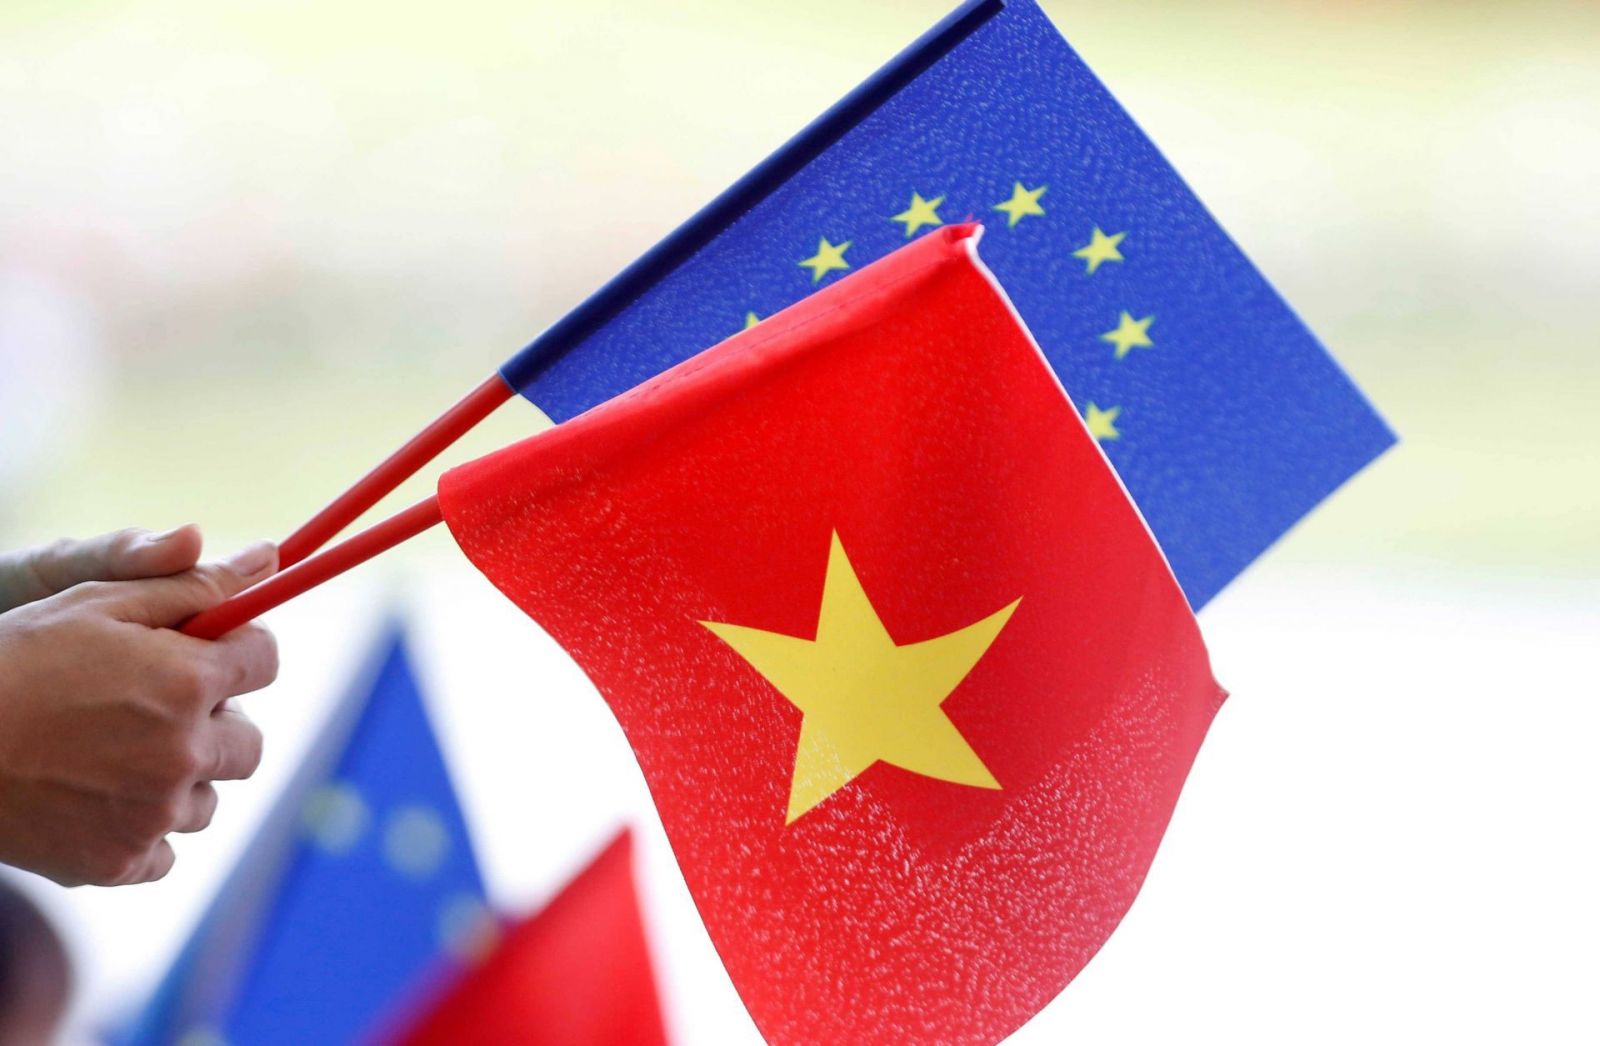 Hiệp định EVFTA đã được thông qua đã góp phần mang đến cho doanh nghiệp Việt Nam cơ hội dễ dàng vào thị trường châu Âu